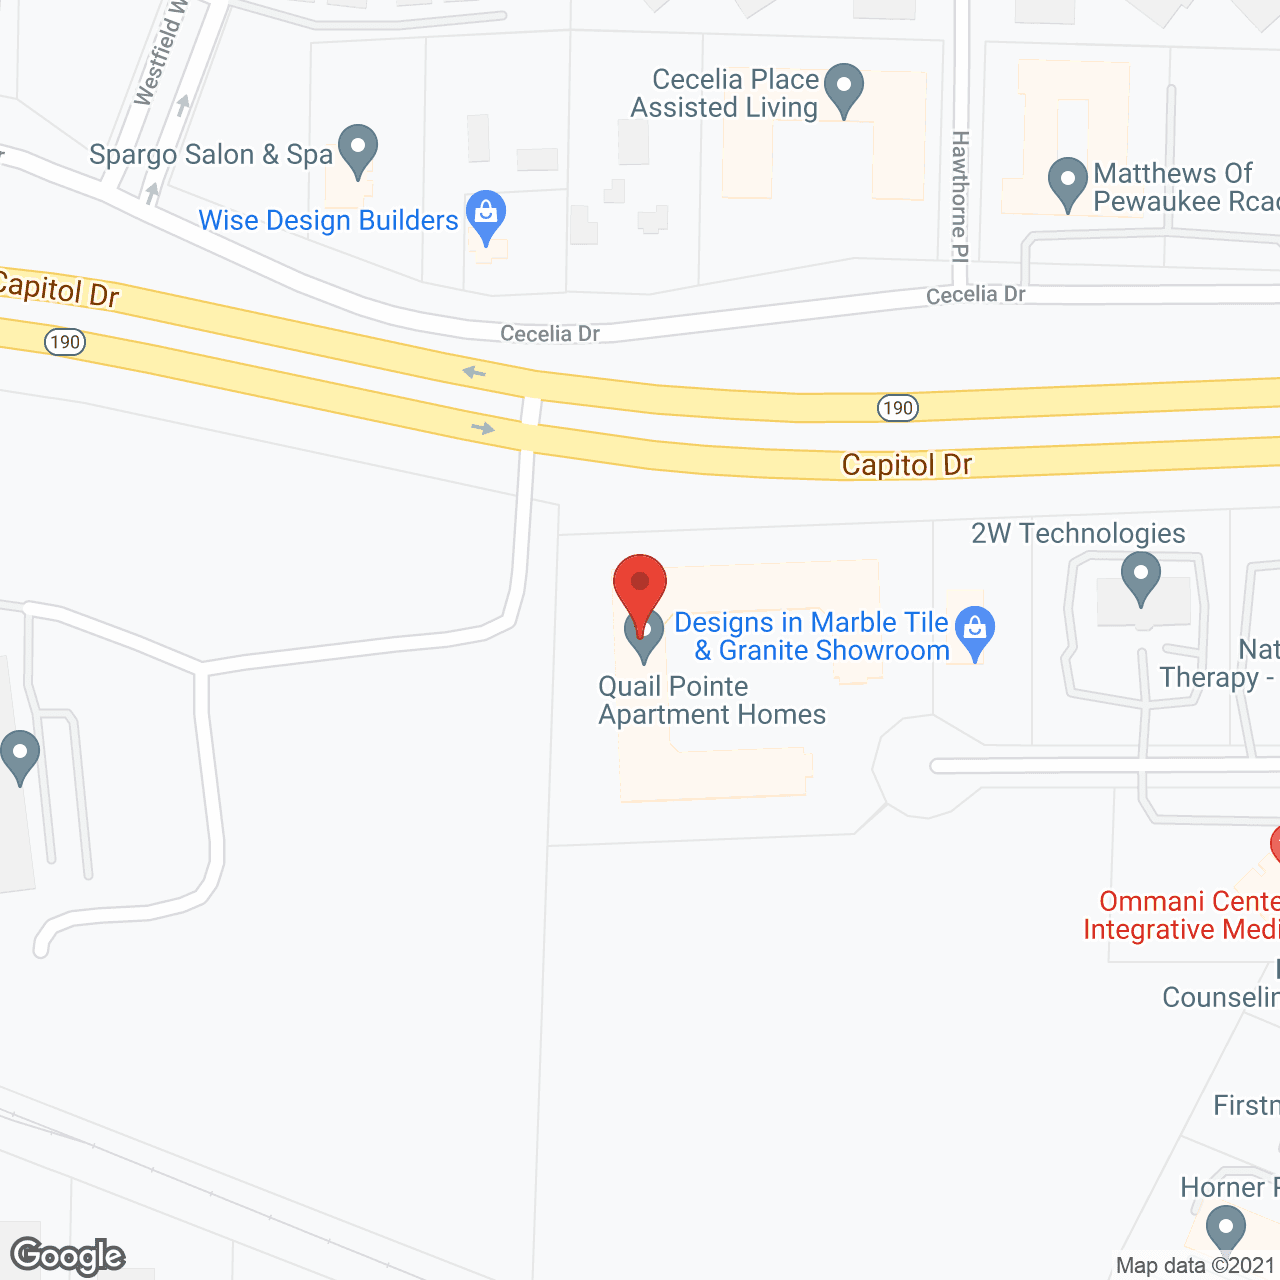 Quail Pointe in google map